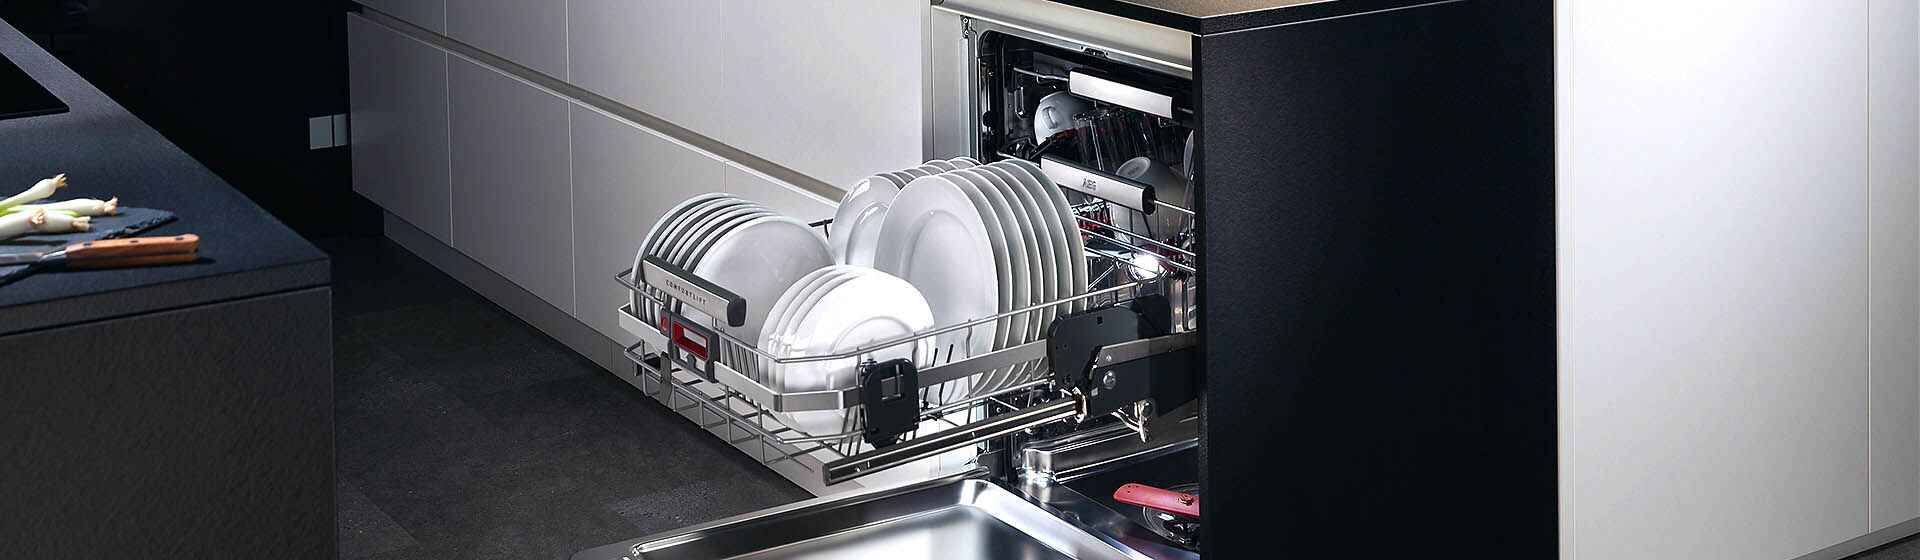 Встроенная посудомойка 45 см рейтинг. Посудомойка AEG 45 см встраиваемая. Встраиваемая посудомоечная машина Maunfeld MLP 06im. Посудомоечная машина AEG 45 см встраиваемая 2003 года. Полновстраиваемая посудомоечная машина 45 см.